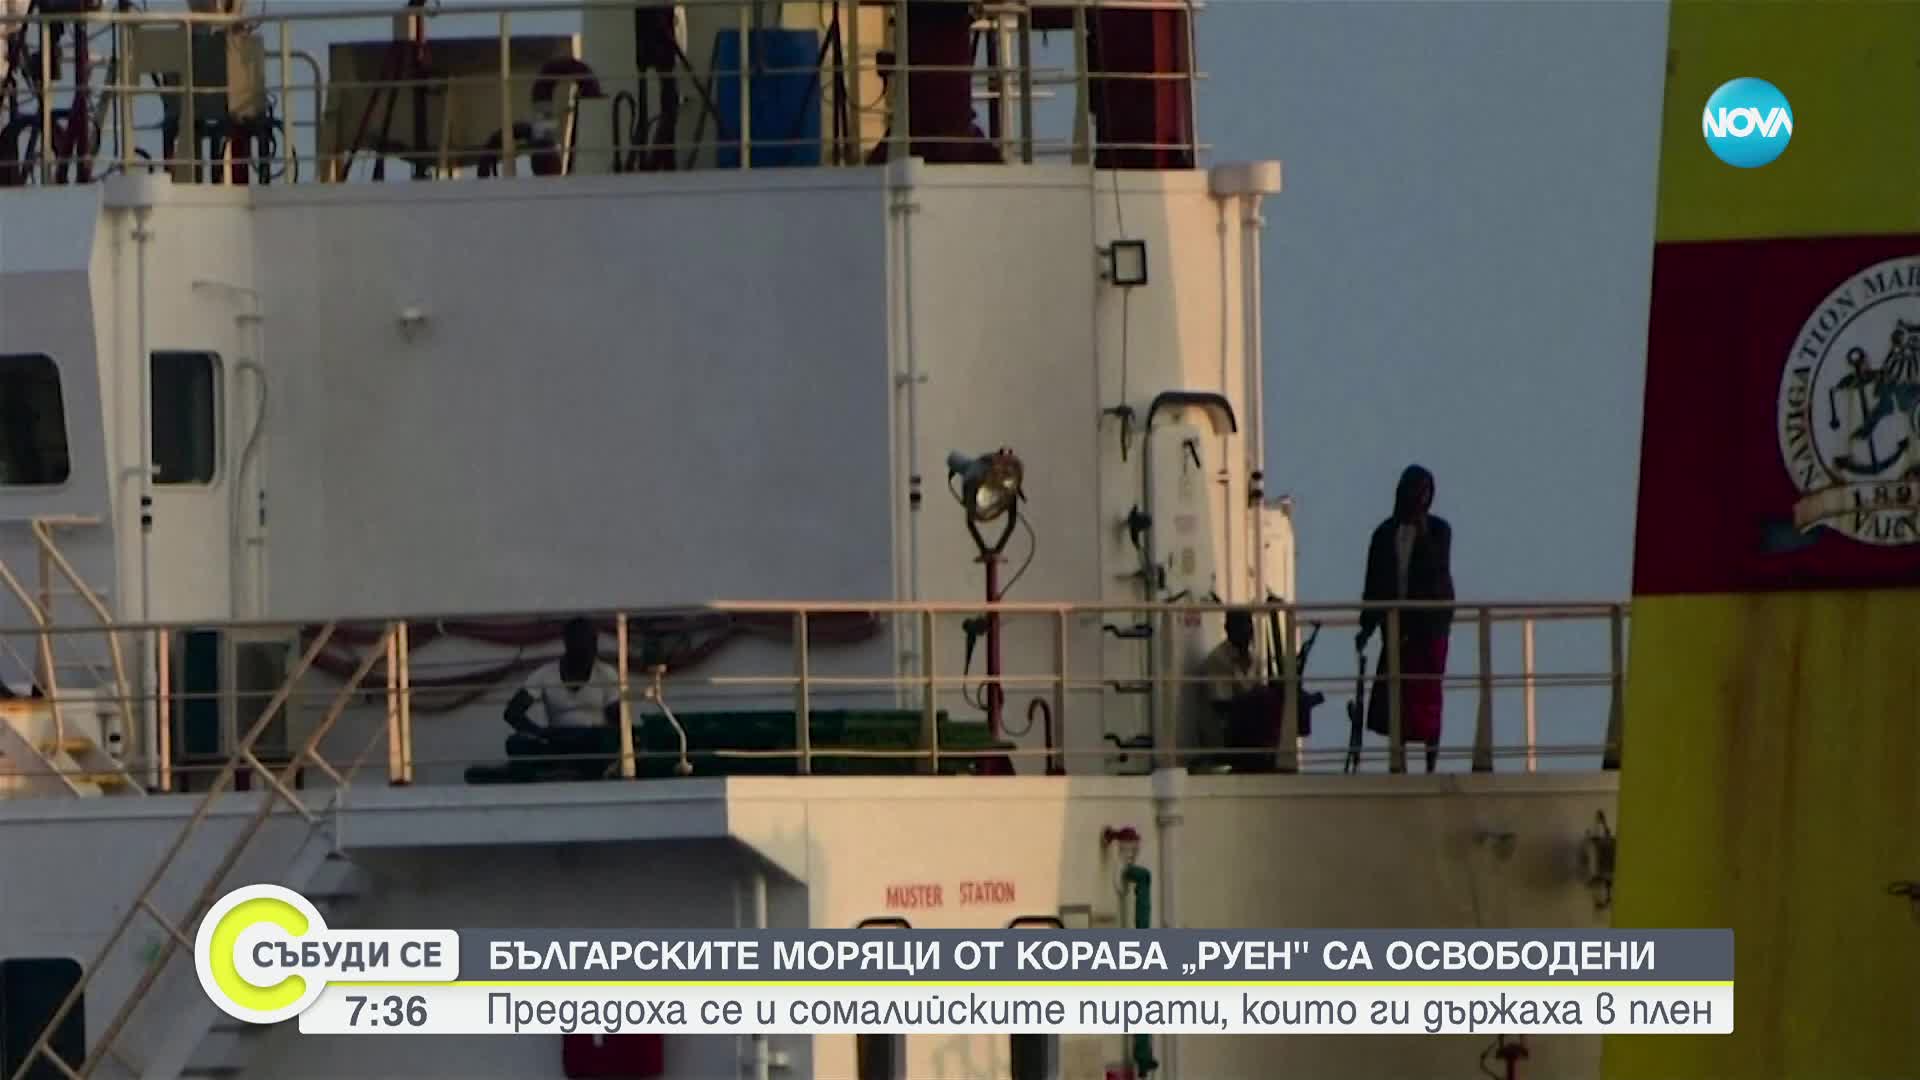 Александър Калчев, БМФ: Предполагам, че до 15 дни моряците ще се приберат у дома